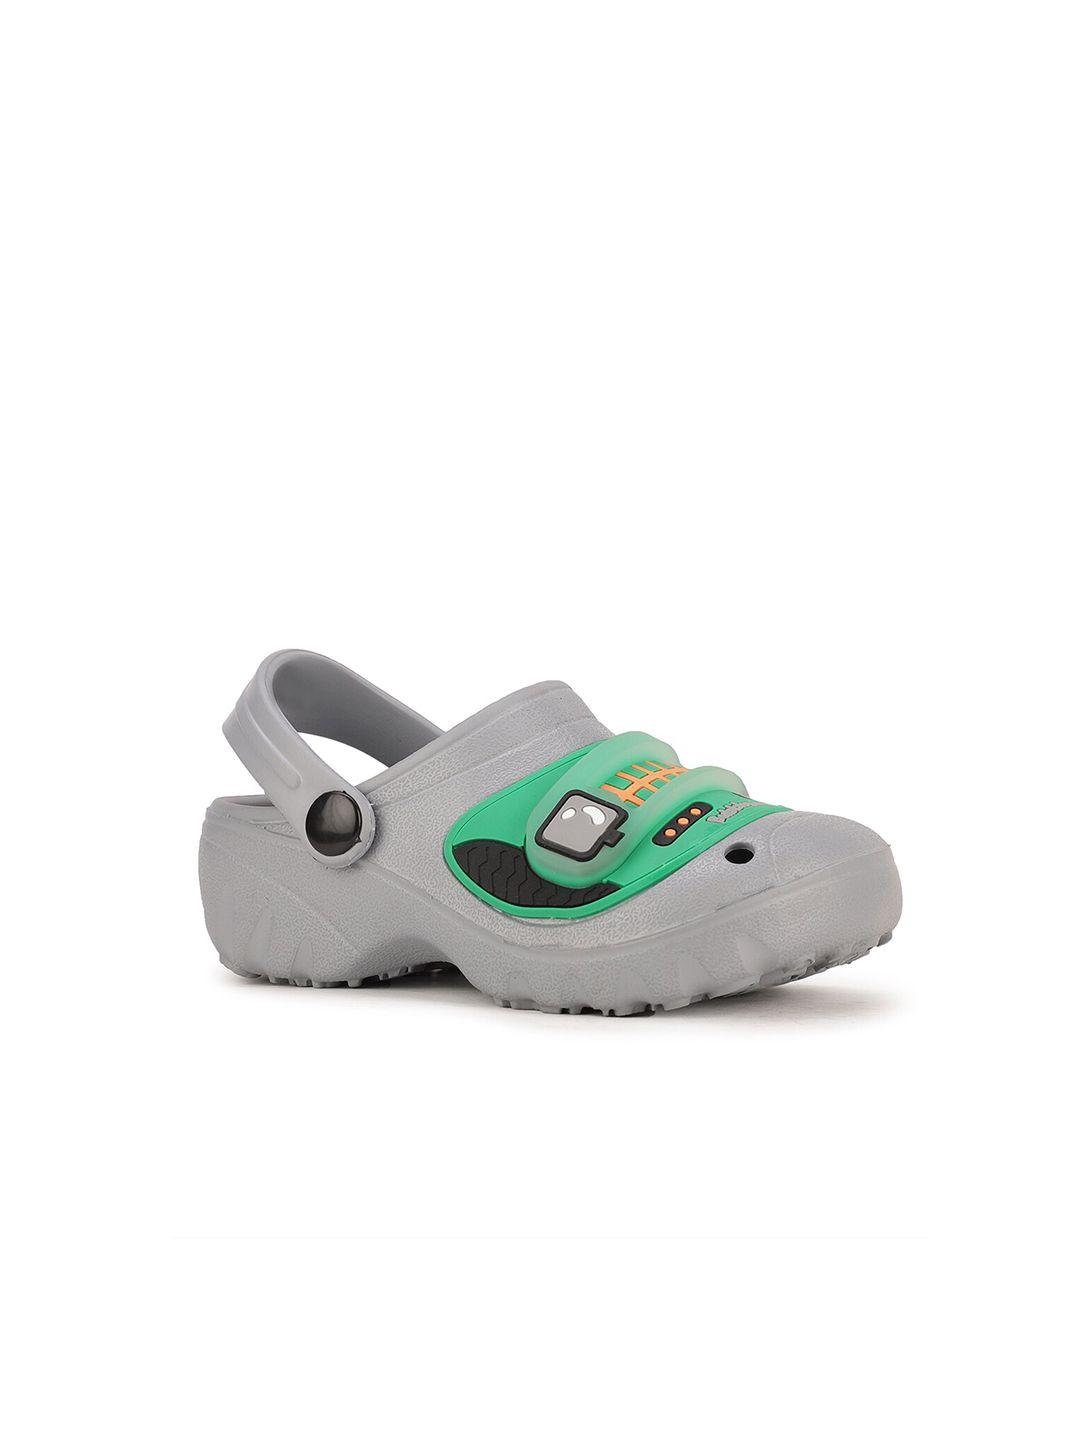 bubblegummers boys grey clogs sandals